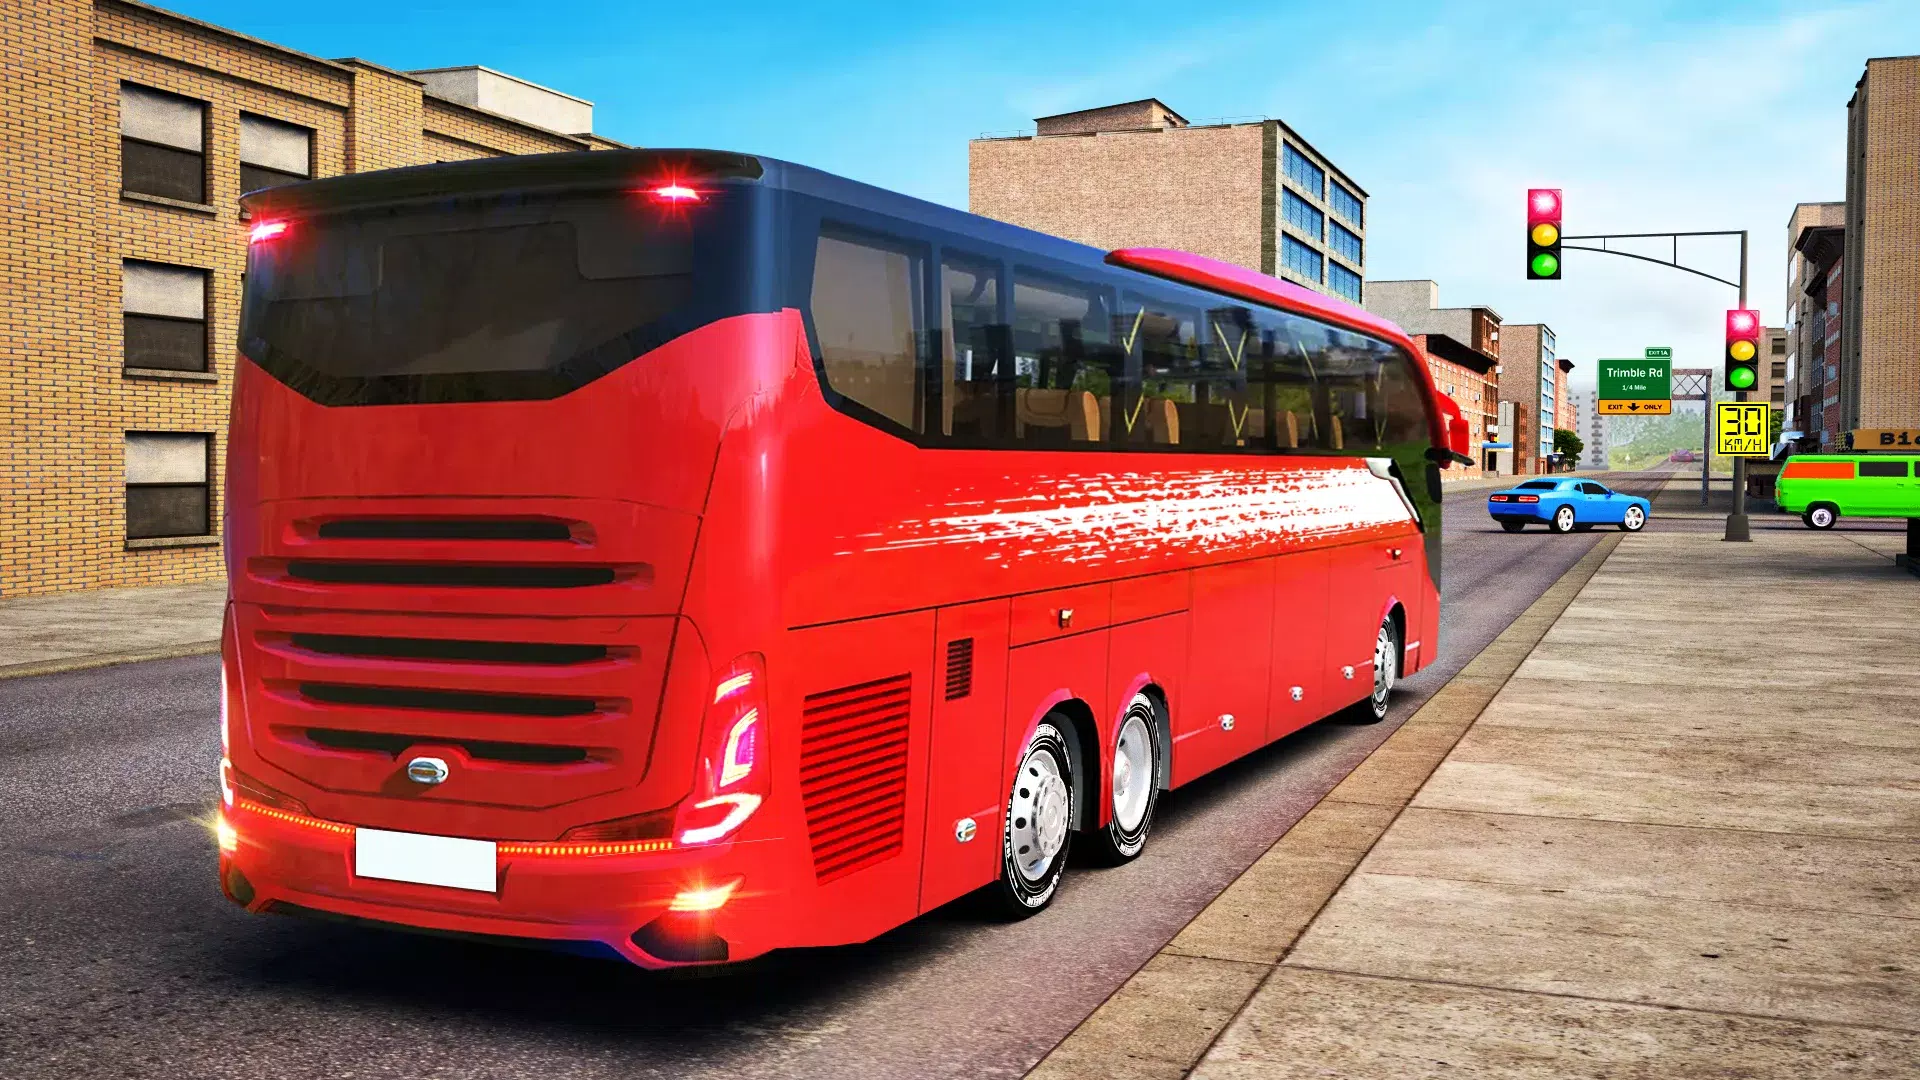 Download do APK de jogo de dirigir ônibus viagem para Android